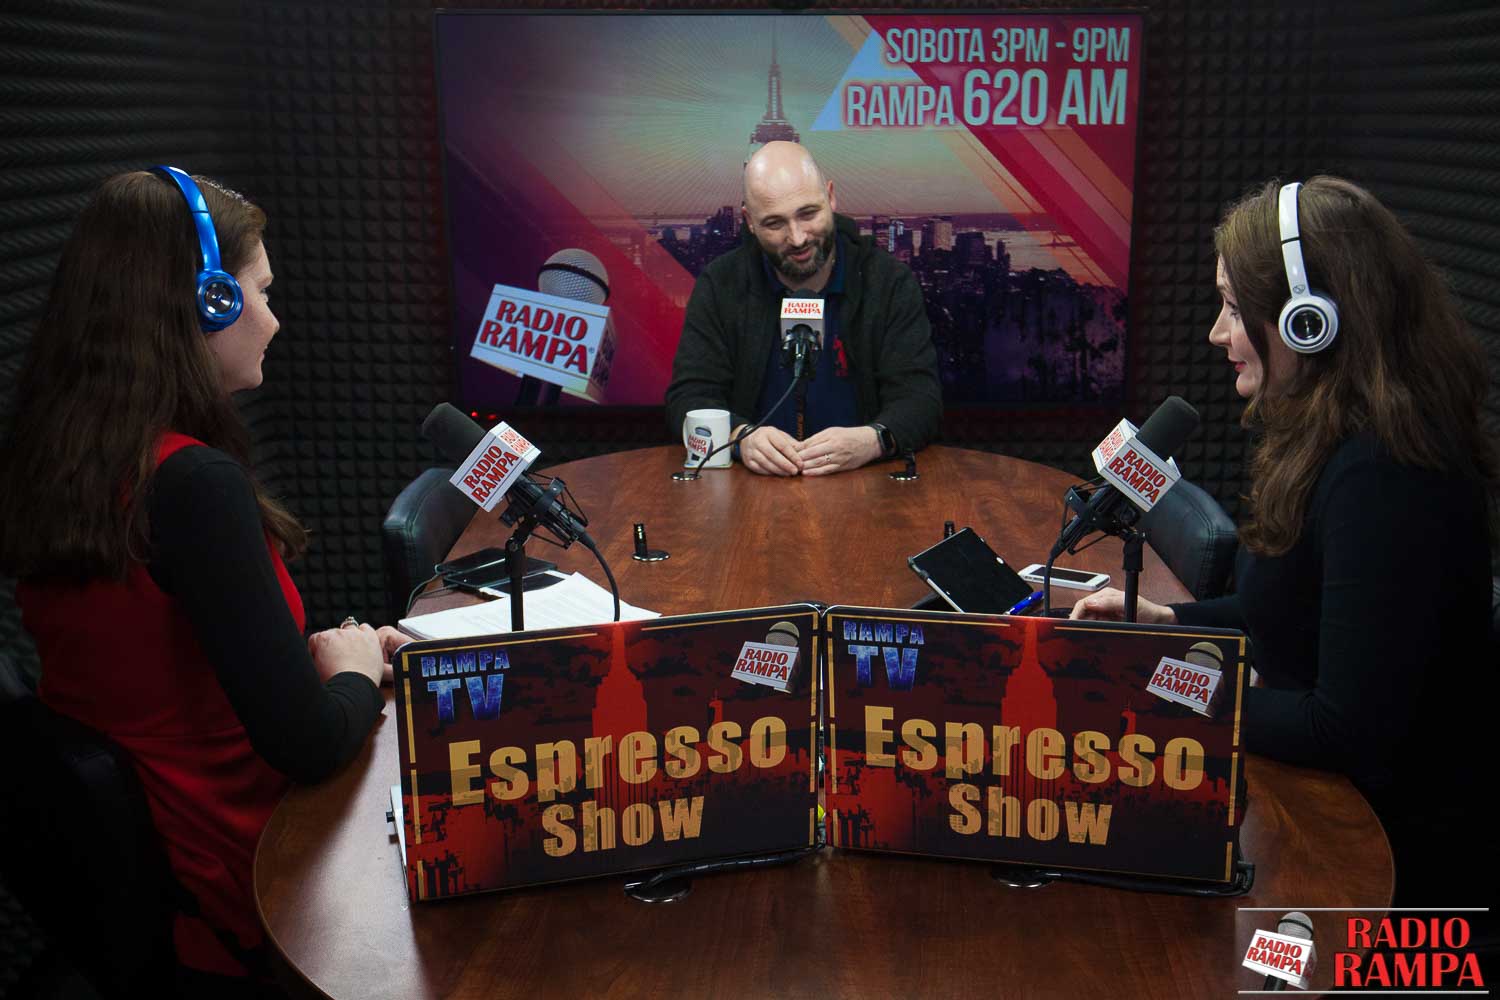 Espresso Show 3-30-18 Wielki Piątek; o tym dlaczego nie można bać się spowiedzi ks. Michał Olszewski; a także, astma - jak jej zapobiec?